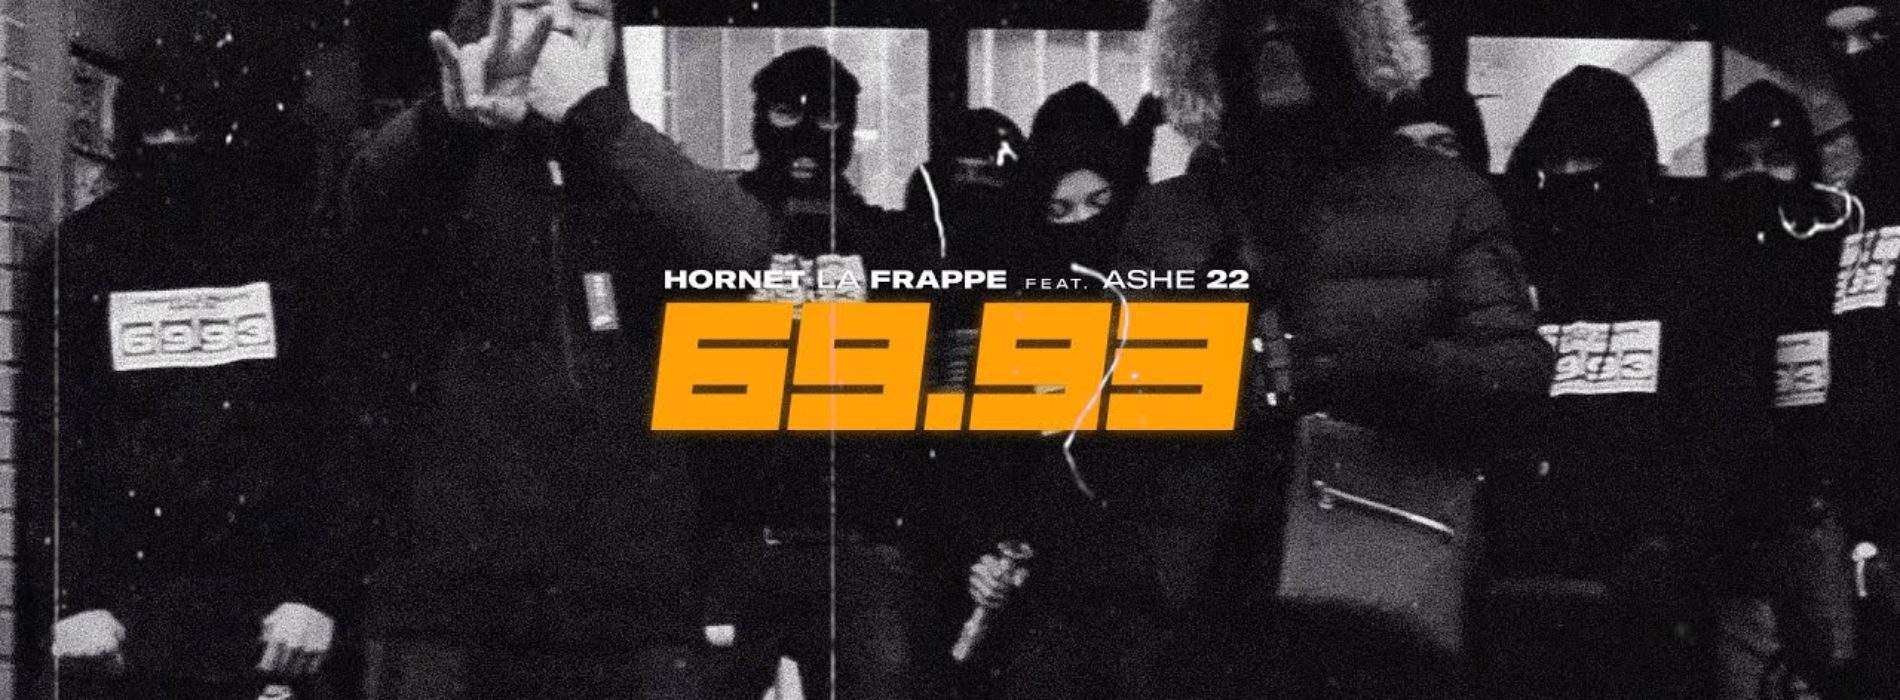 Hornet La Frappe – 69.93 feat. ASHE 22 (Clip officiel) – Décembre 2020